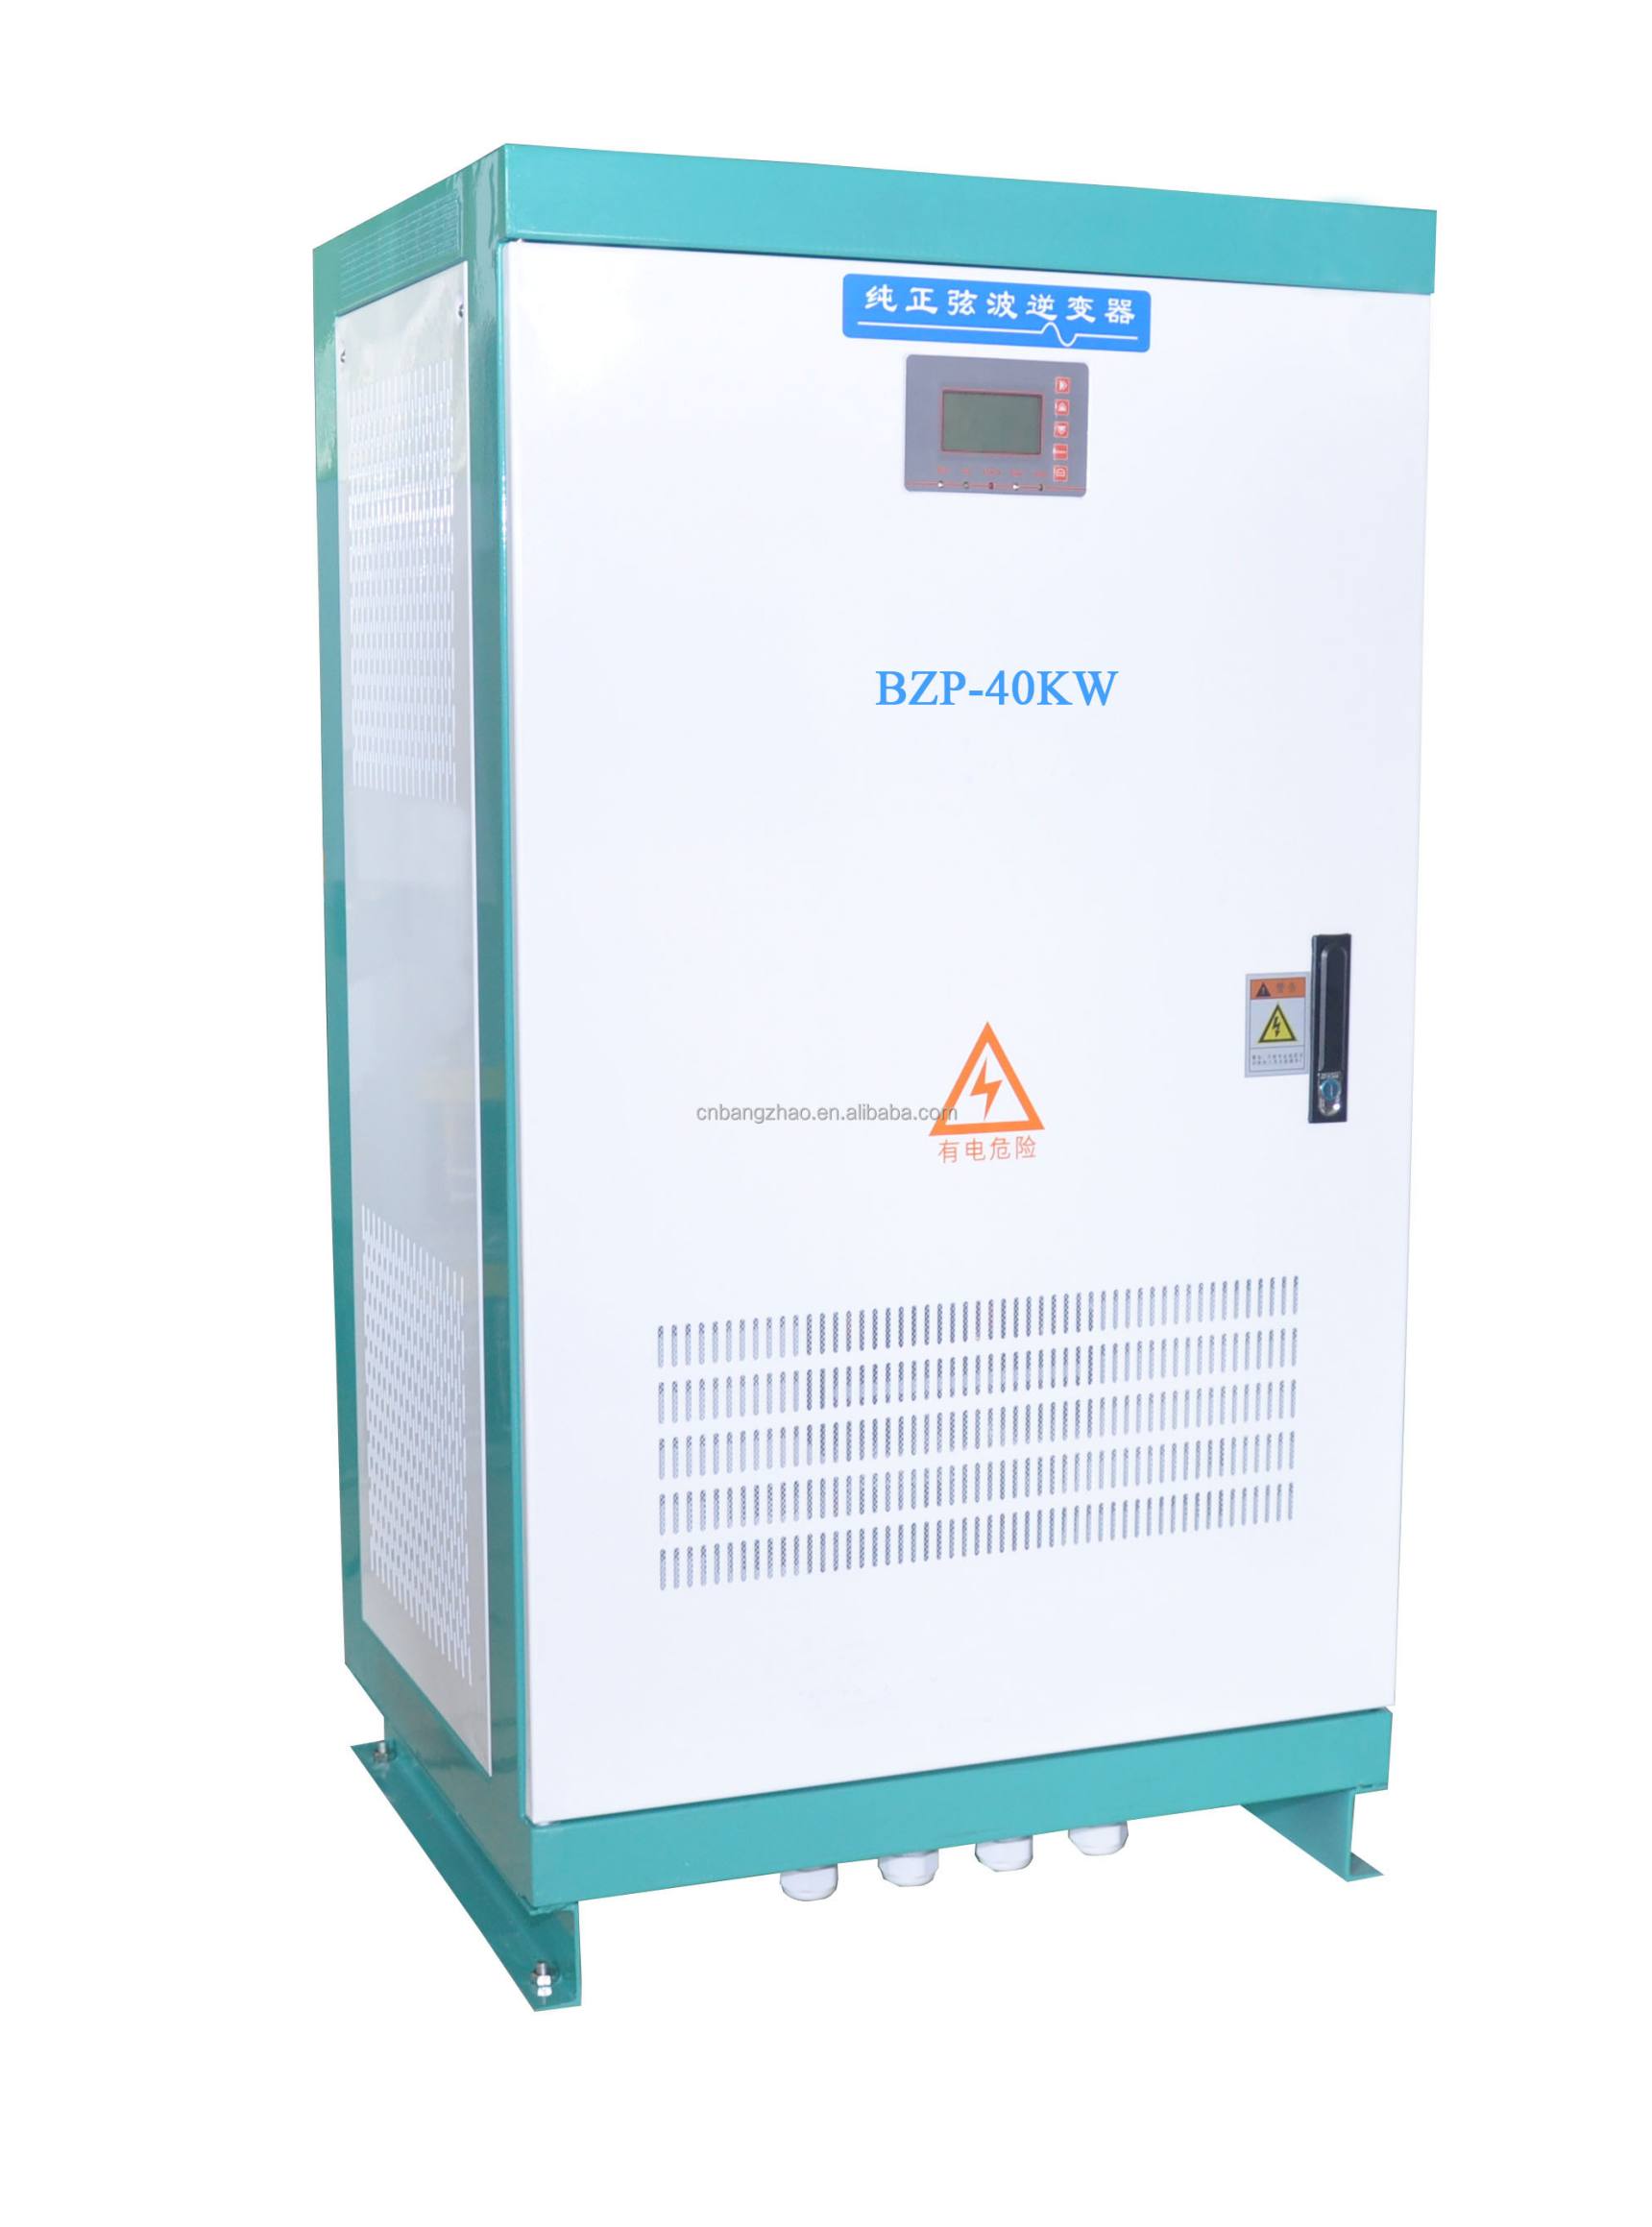 200-500VDC input to 3 phase 400VAC 50HZ Solar Wind hybrid storage system BZP-40KW solar power inverter